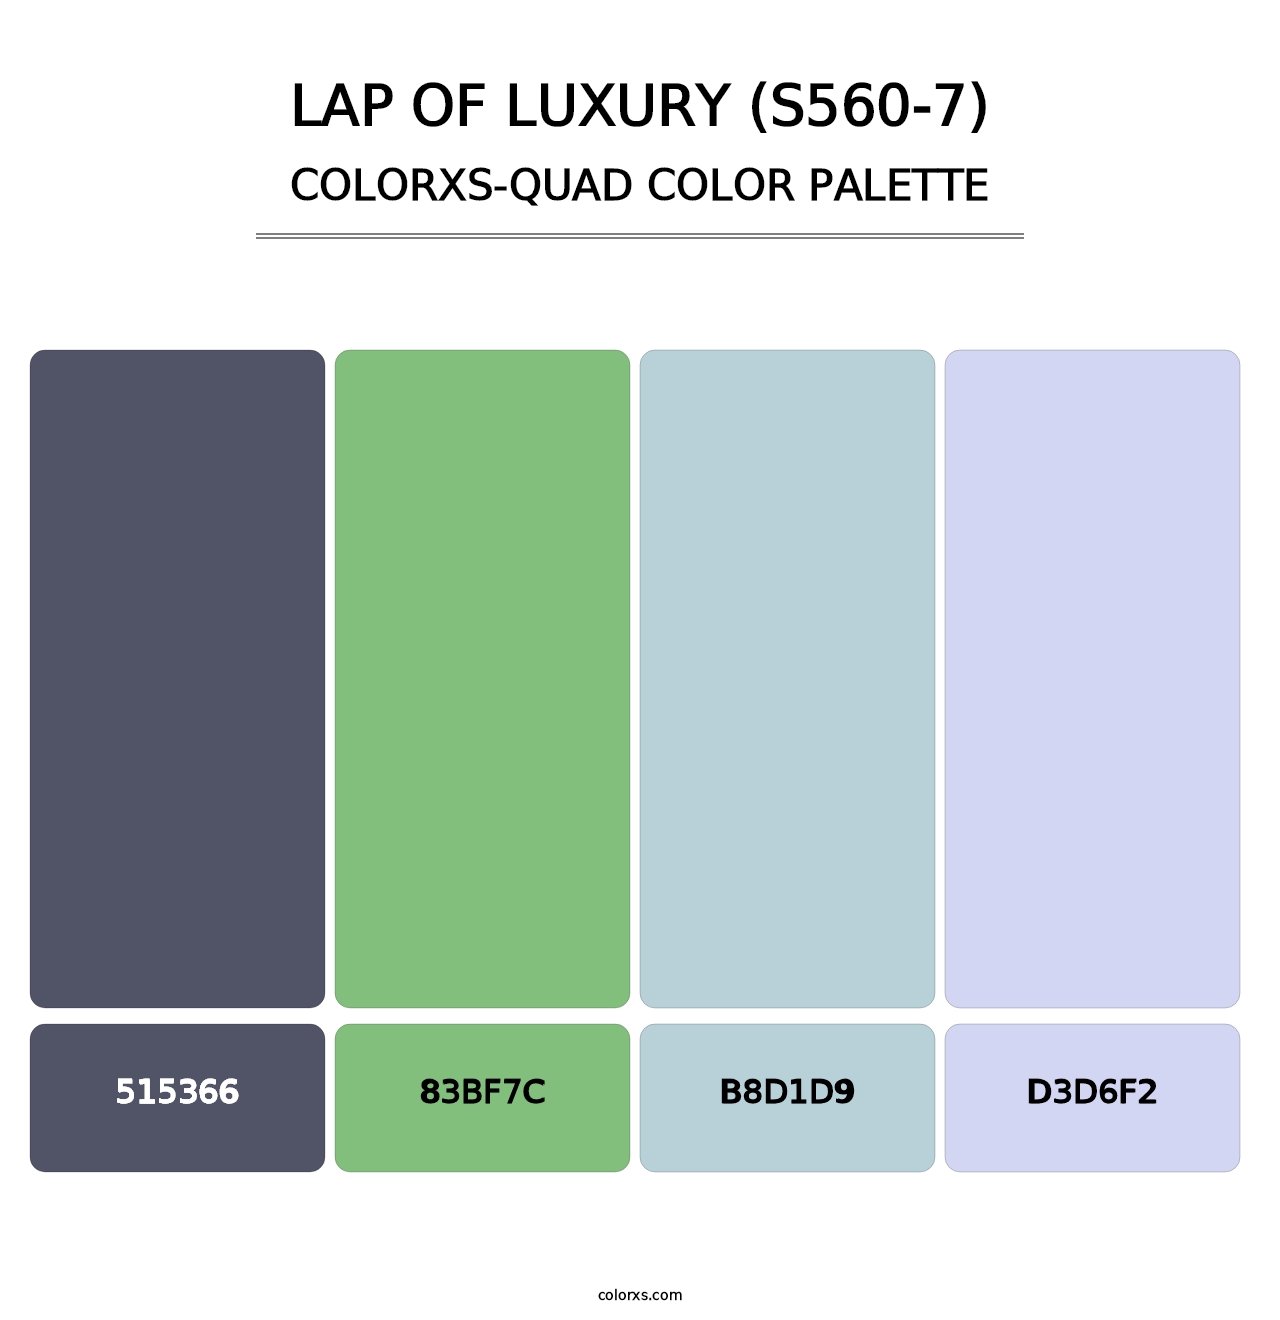 Lap Of Luxury (S560-7) - Colorxs Quad Palette